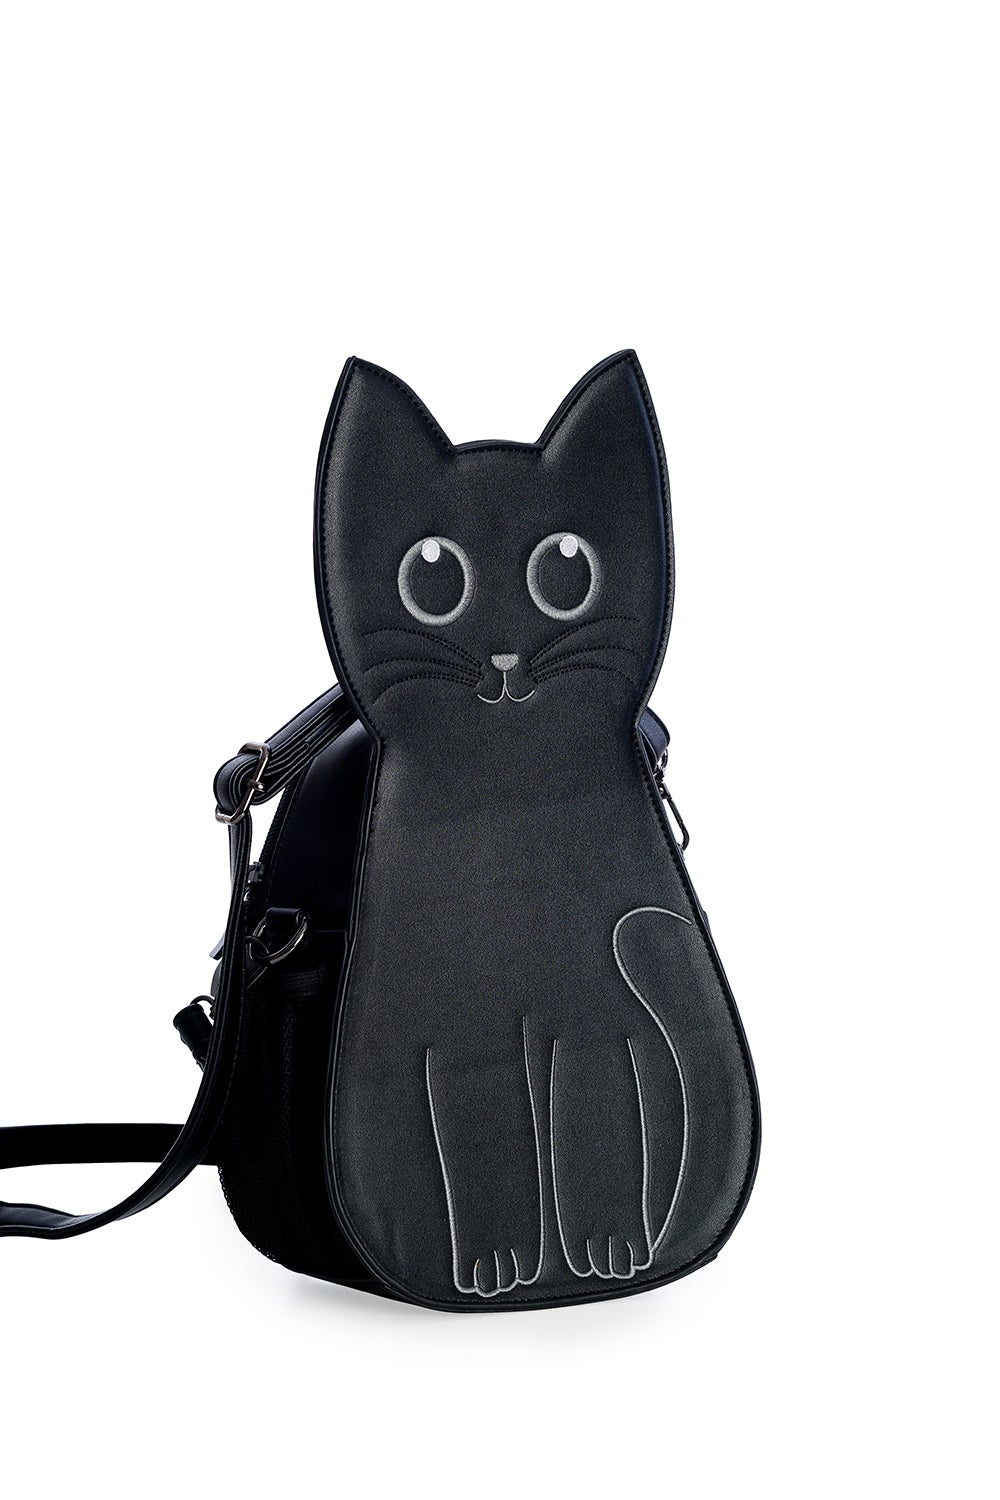 Cat shaped handbag in black. 